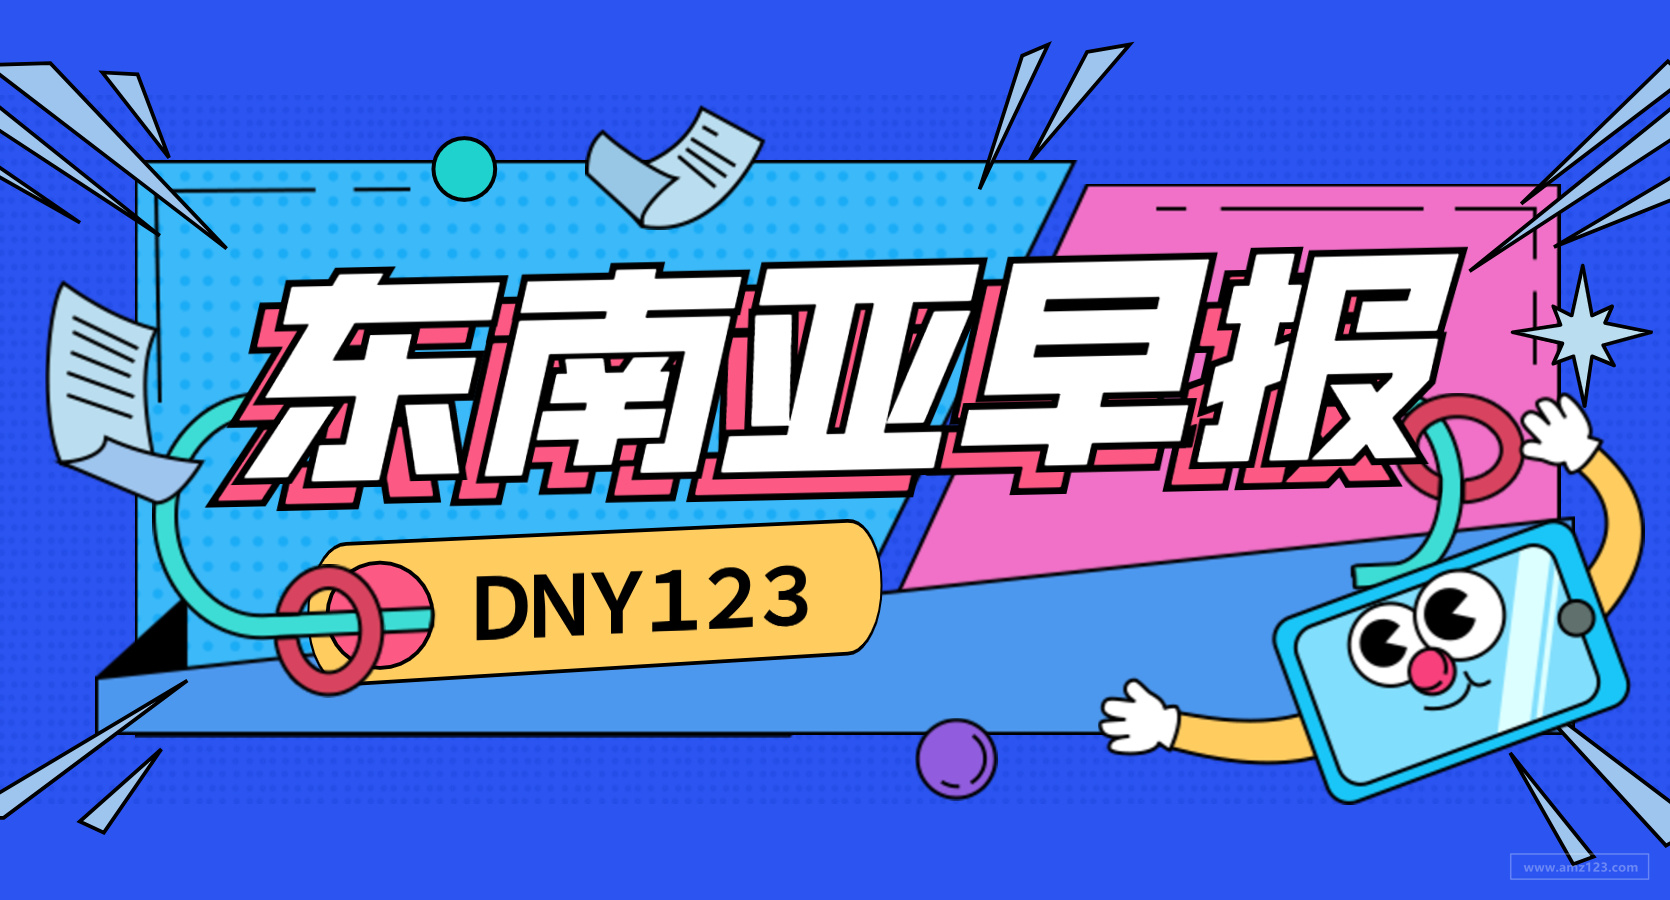 【DNY123跨境早报】Gojek投资支付企业LinkAja，新加坡测试机器人送货